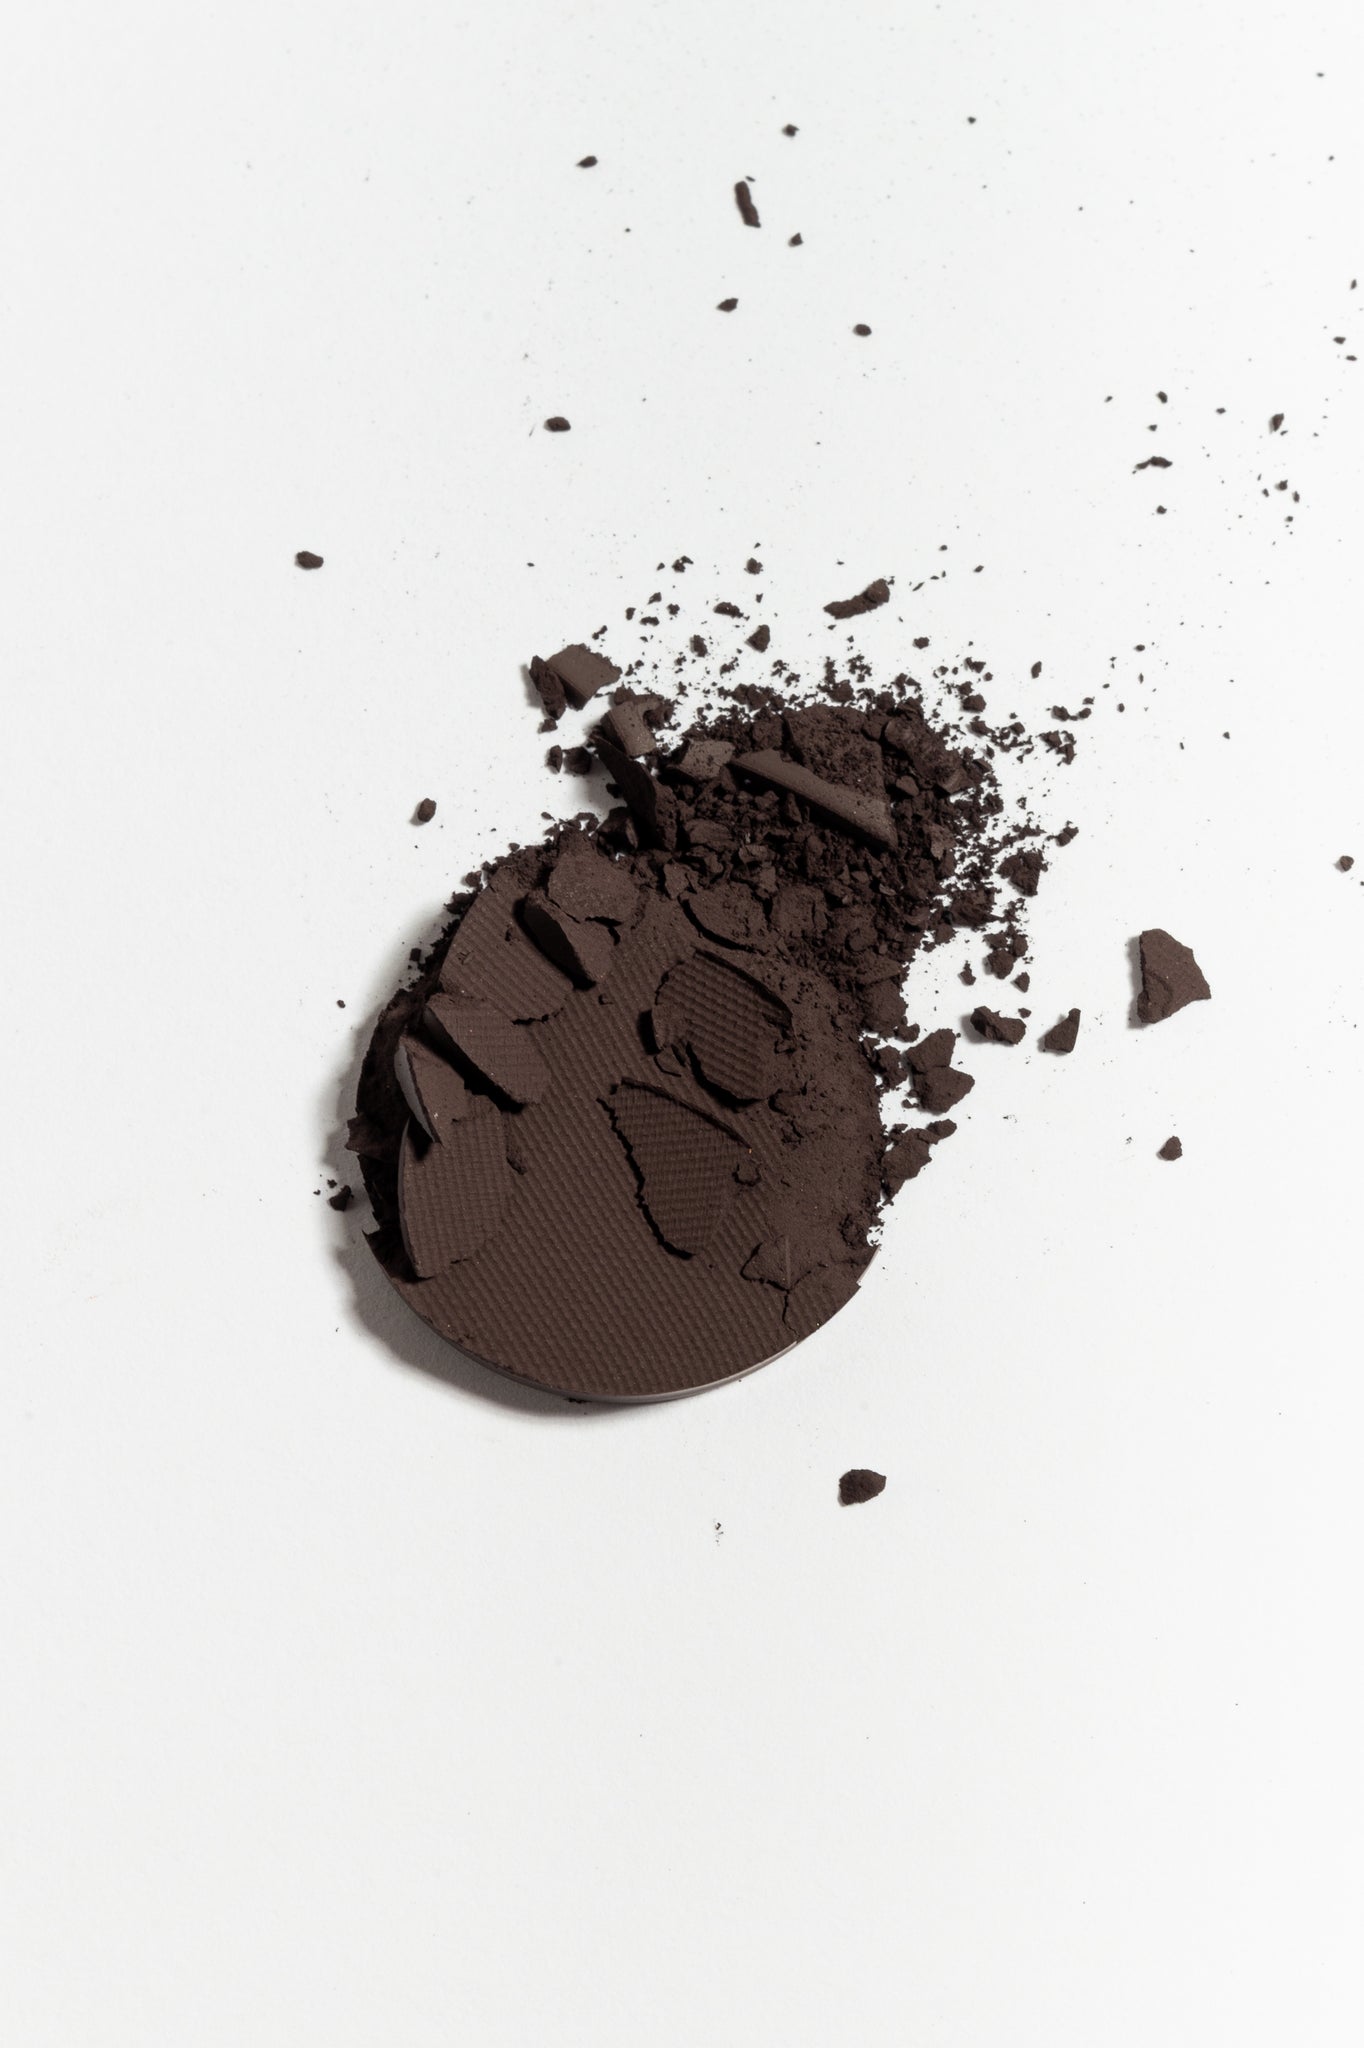 Eye shadow pan in Chocolate Brown